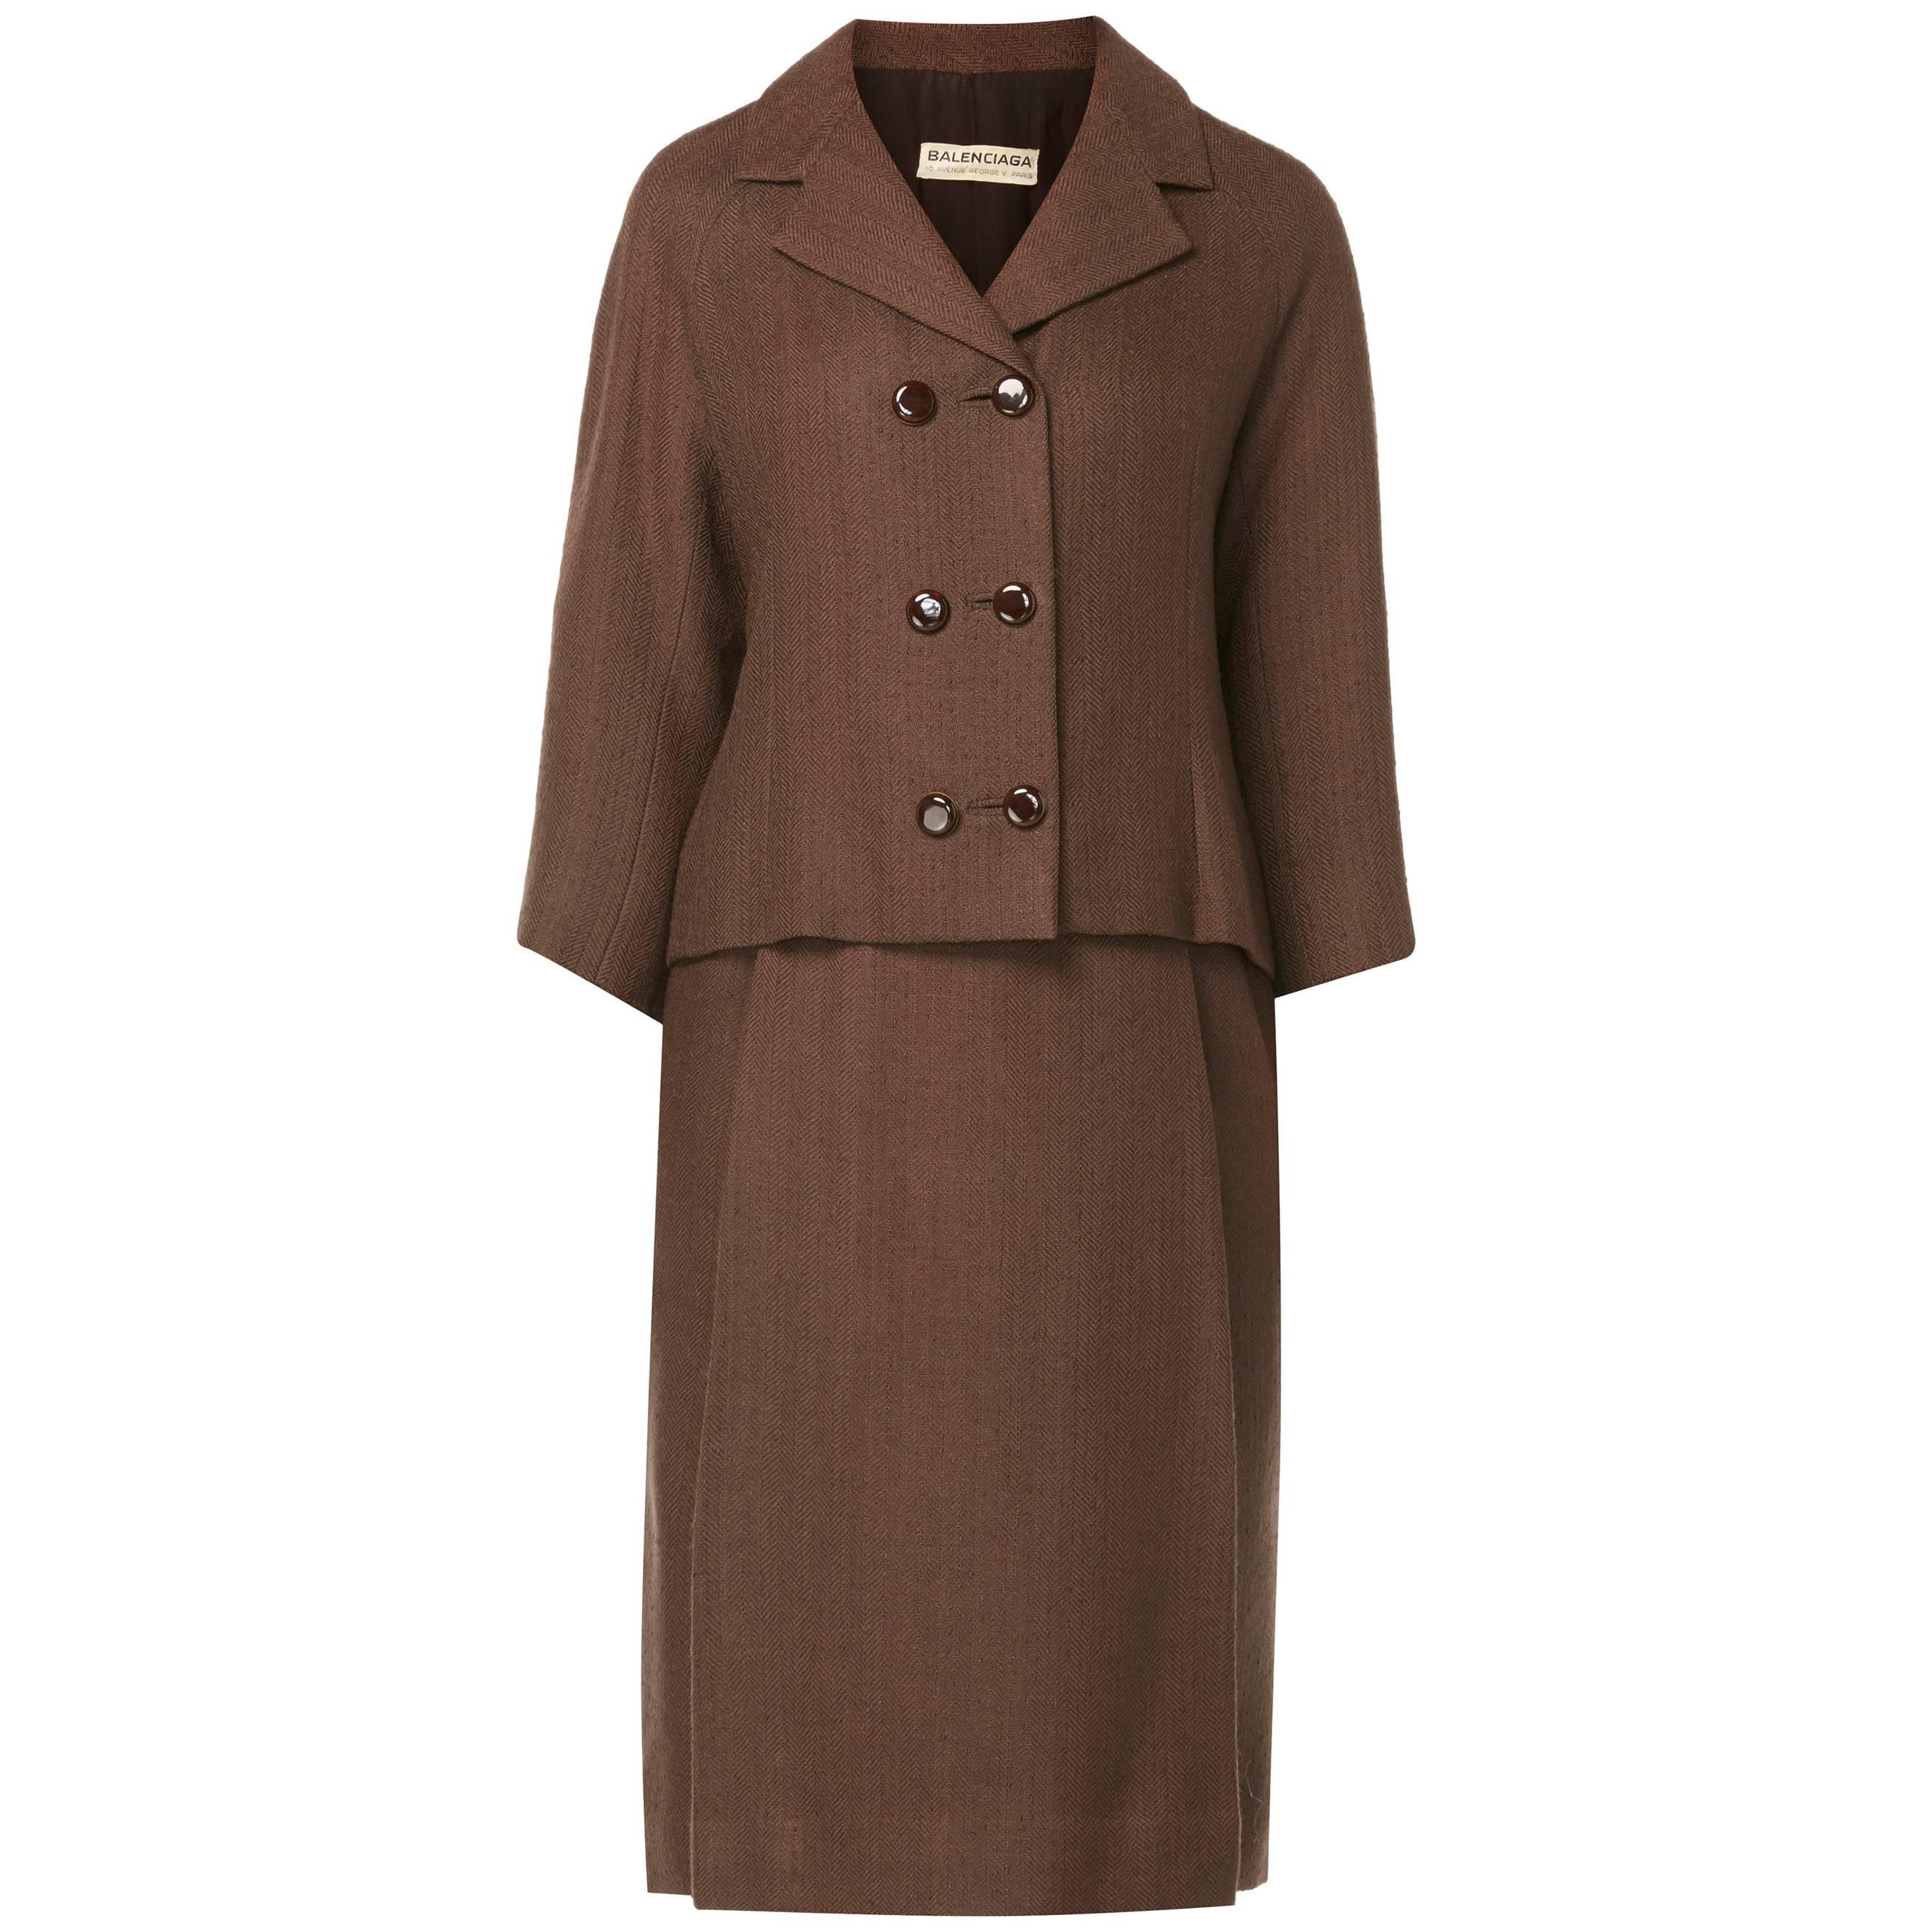 Balenciaga haute couture brown skirt suit, circa 1966